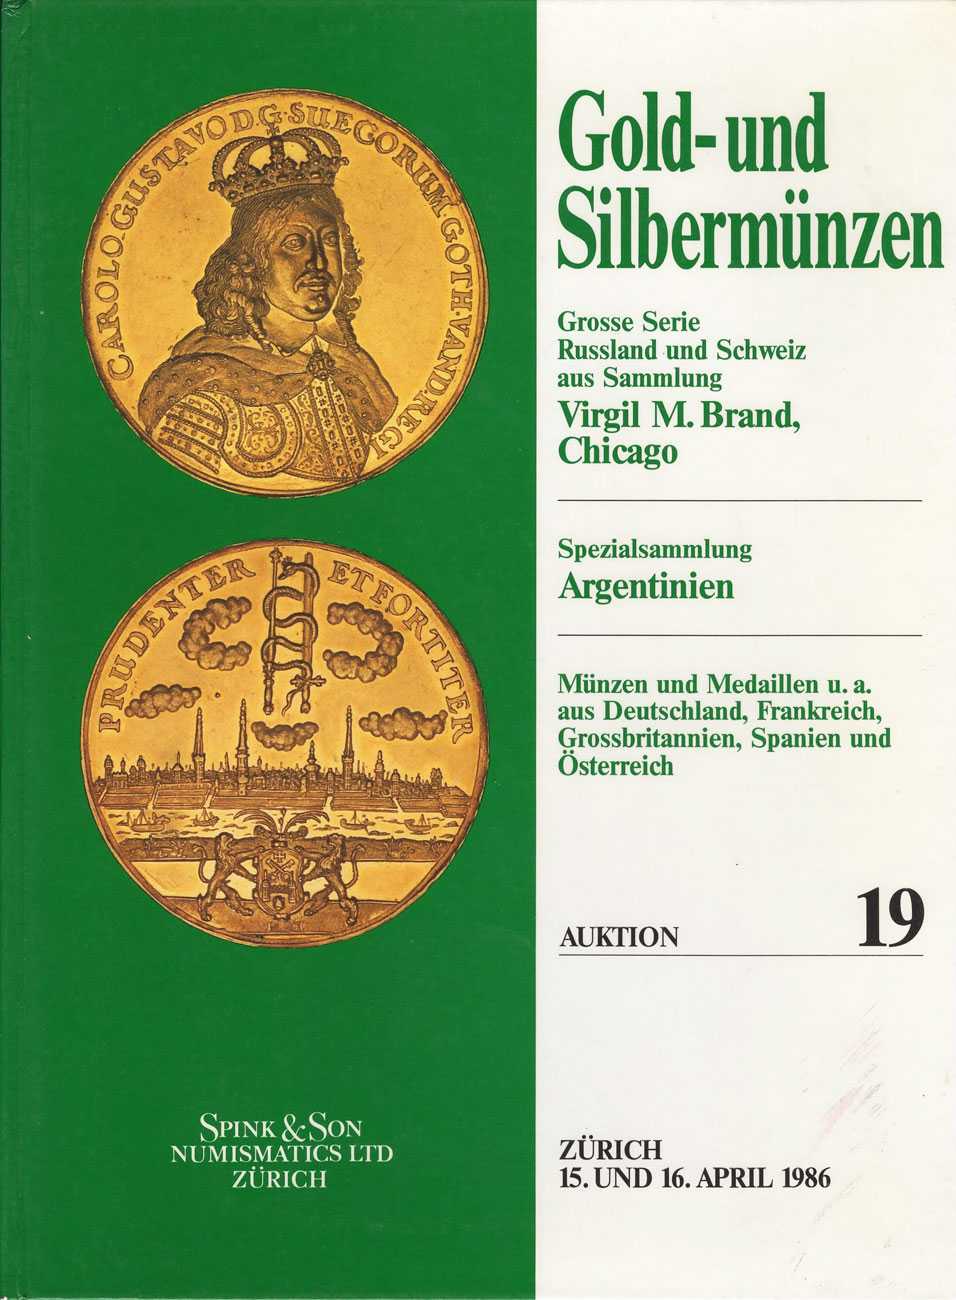 Лот №809, Spink&Son Numismatics Ltd, Цюрих. Каталог аукциона 15-16 апреля 1986 года. Gold- und Silbermuenzen. (Золотые и серебряные монеты). Аукцион №19..